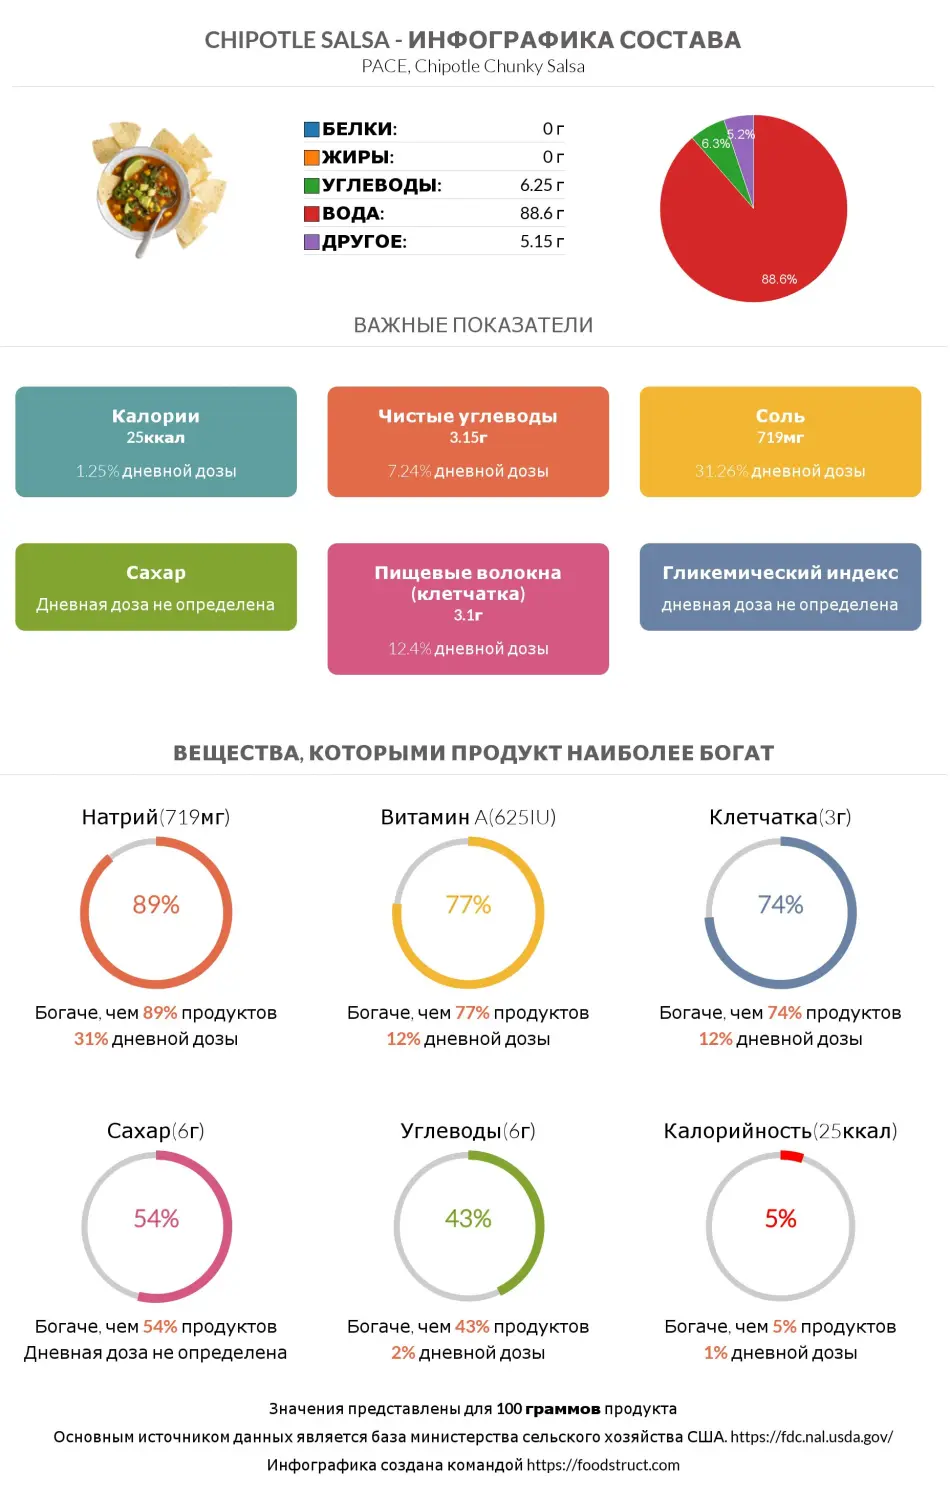 Инфографика состава и питательности для продукта Chipotle salsa